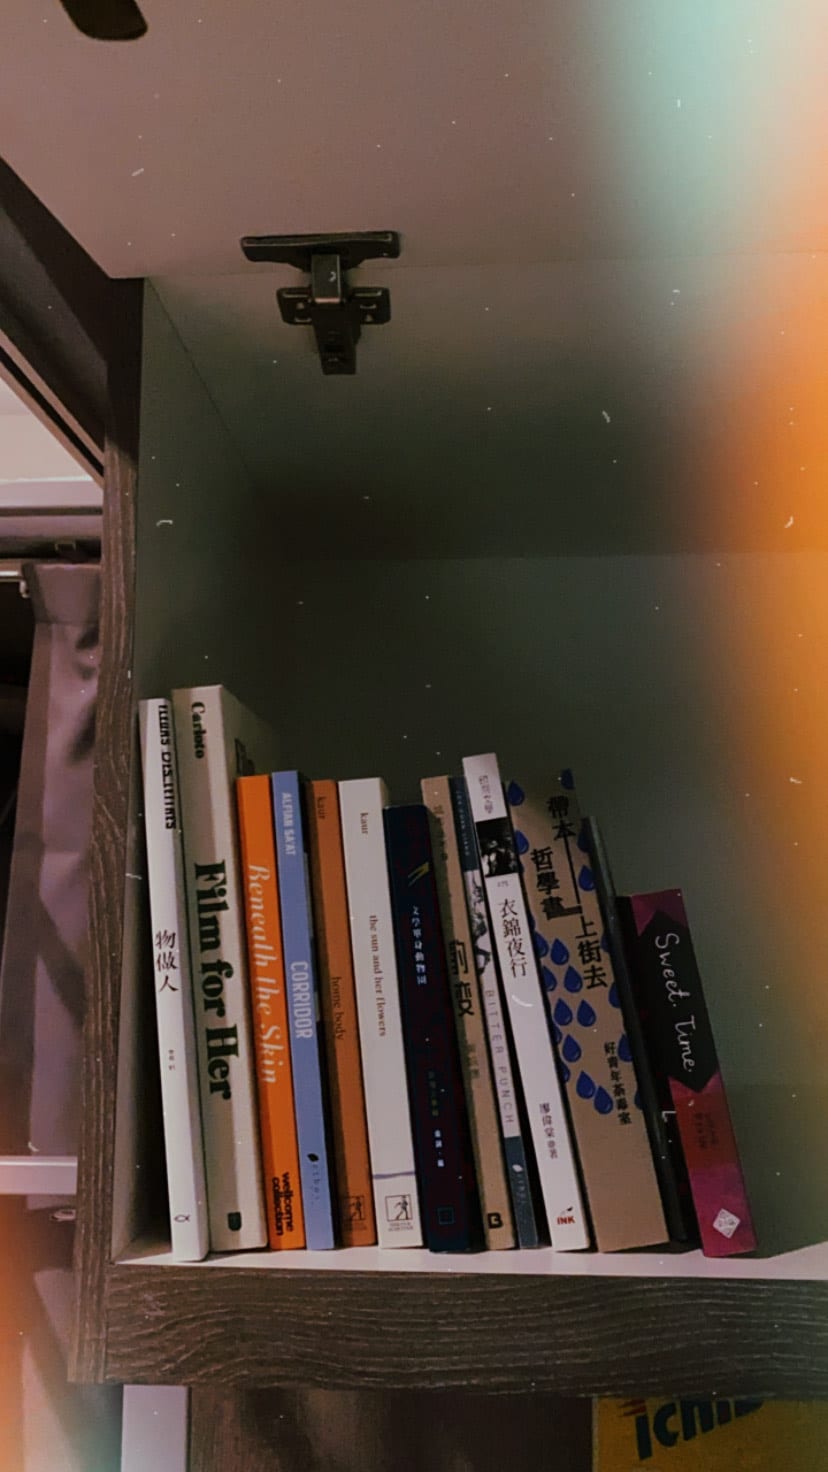 A shelf of books.